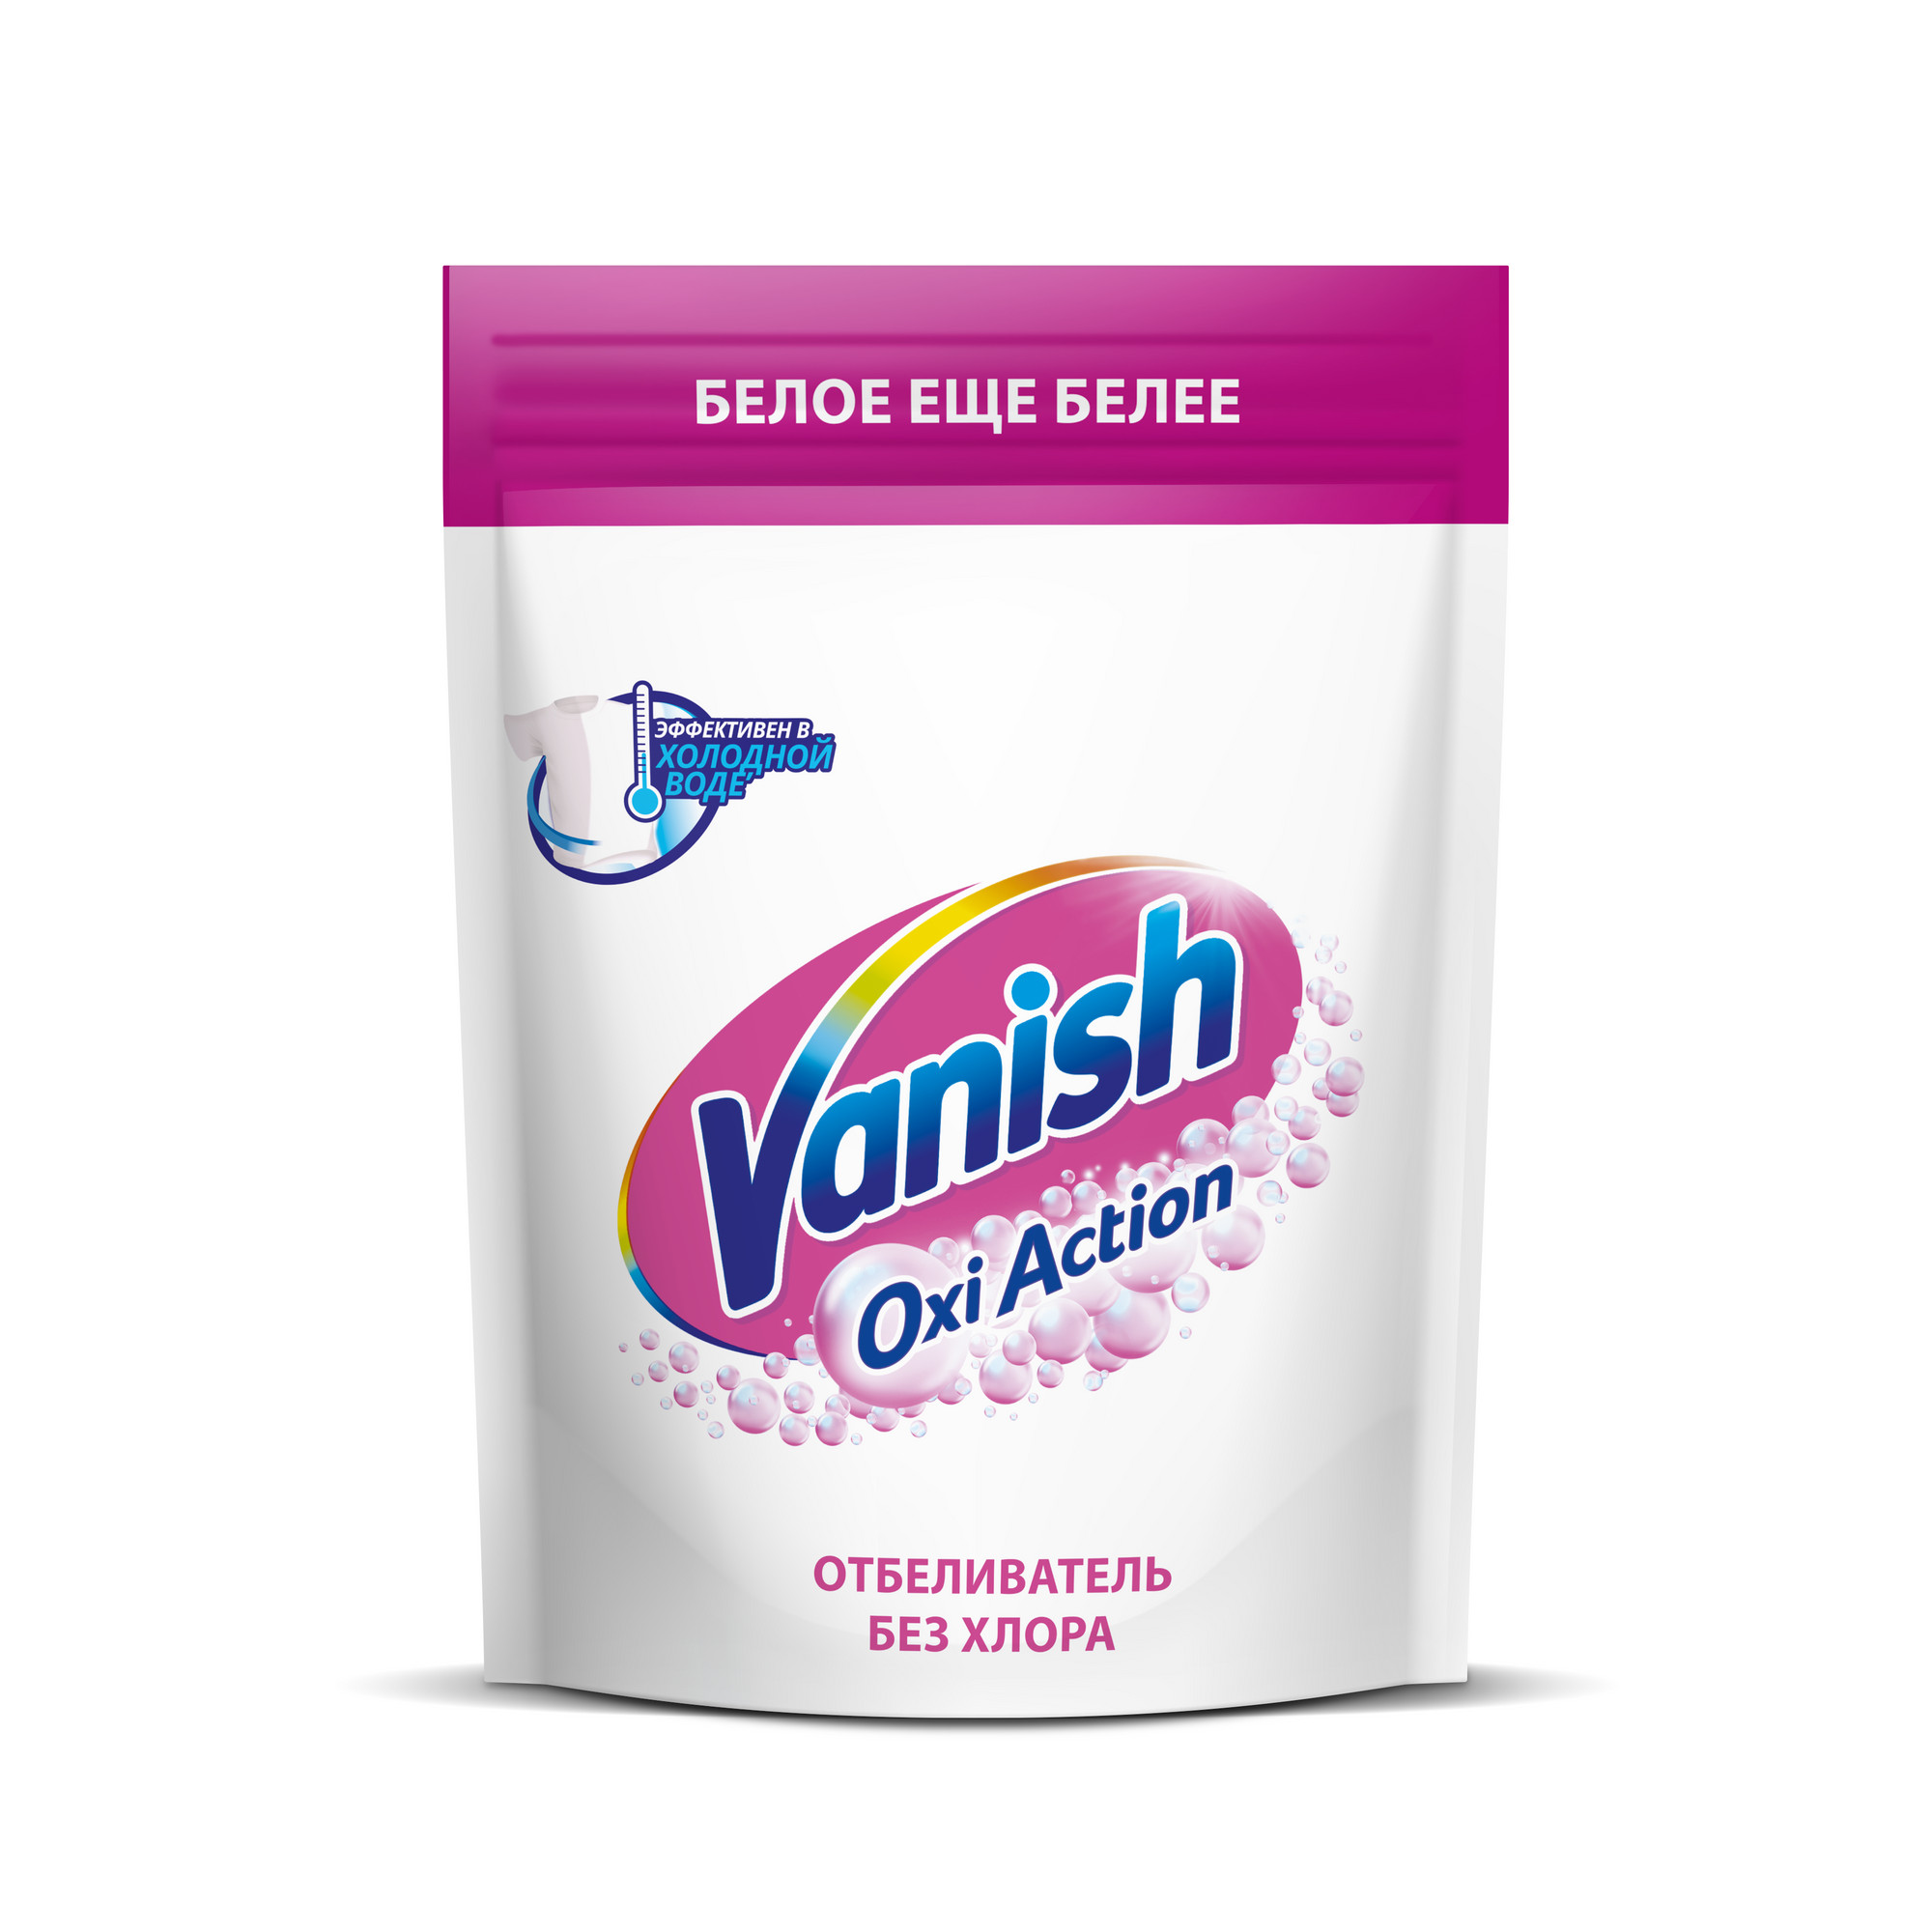 Пятновыводитель Vanish Oxi Action Кристальная белизна для тканей порошкообразный 500 г пятновыводитель и отбеливатель vanish oxi action кристальная белизна для тканей порошкообразный 250 г